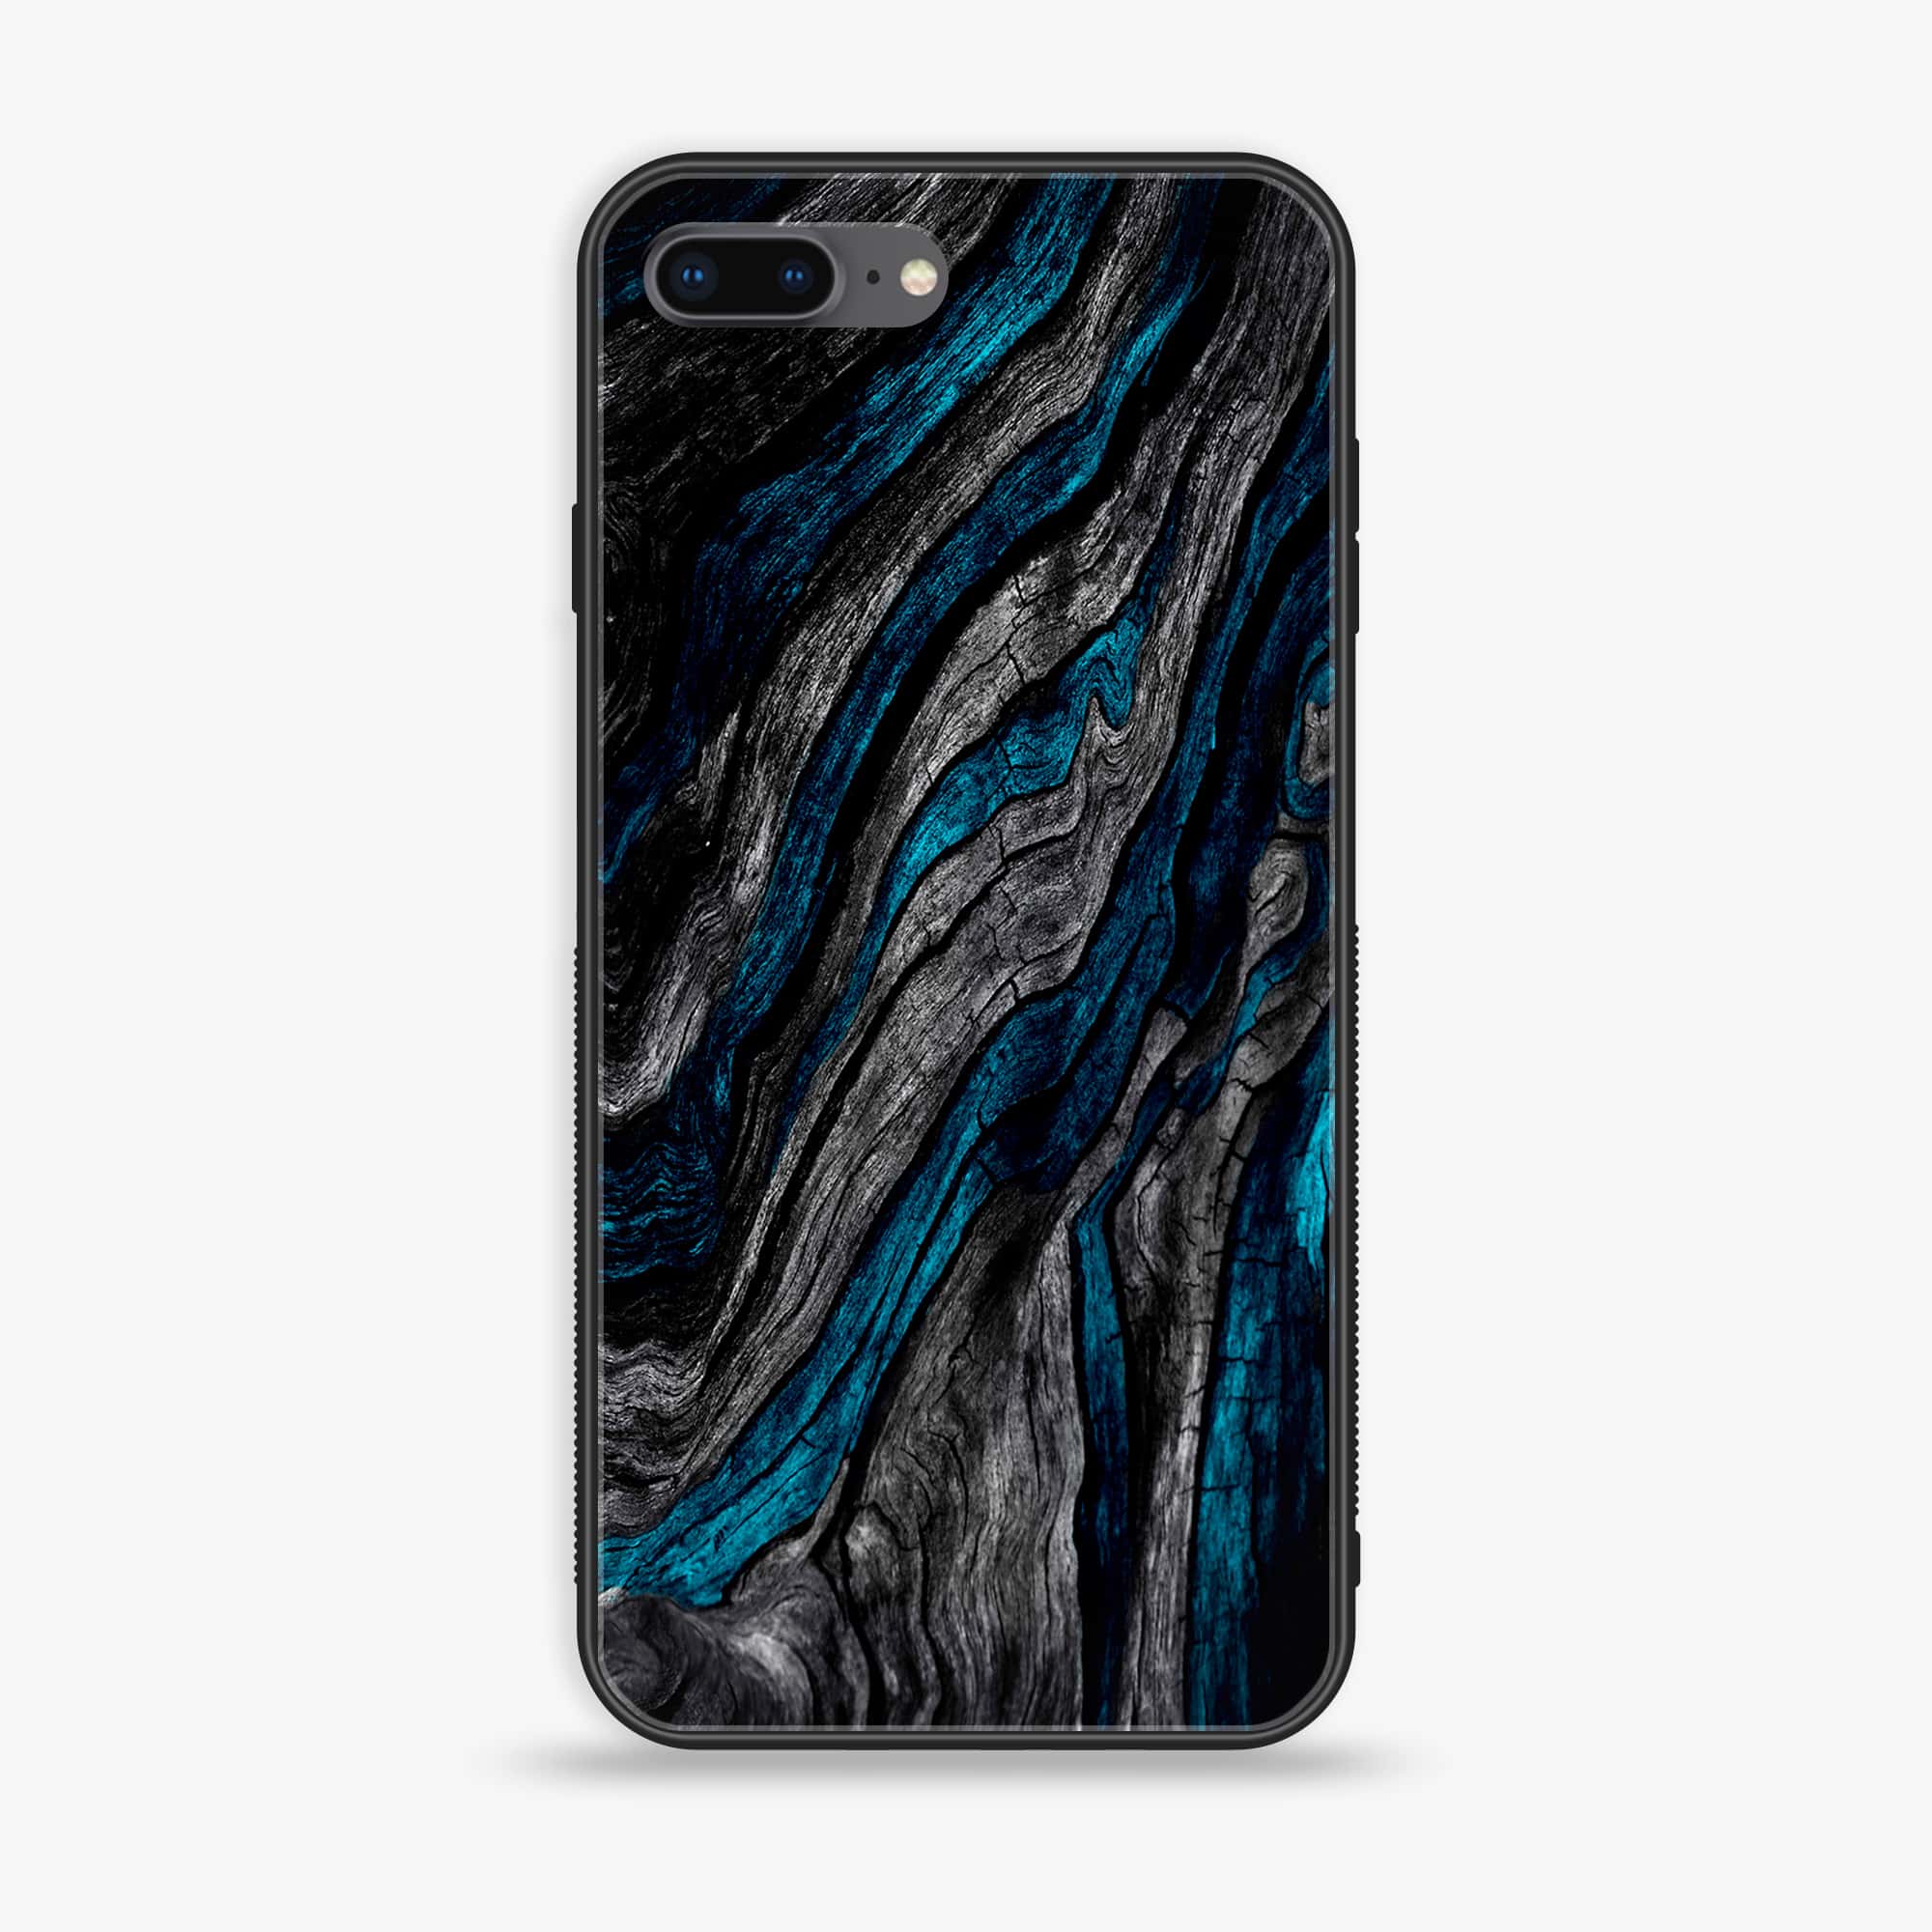 iPhone 8 Plus - Liquid Marble Series - Premium Printed Glass soft Bumper shock Proof Case